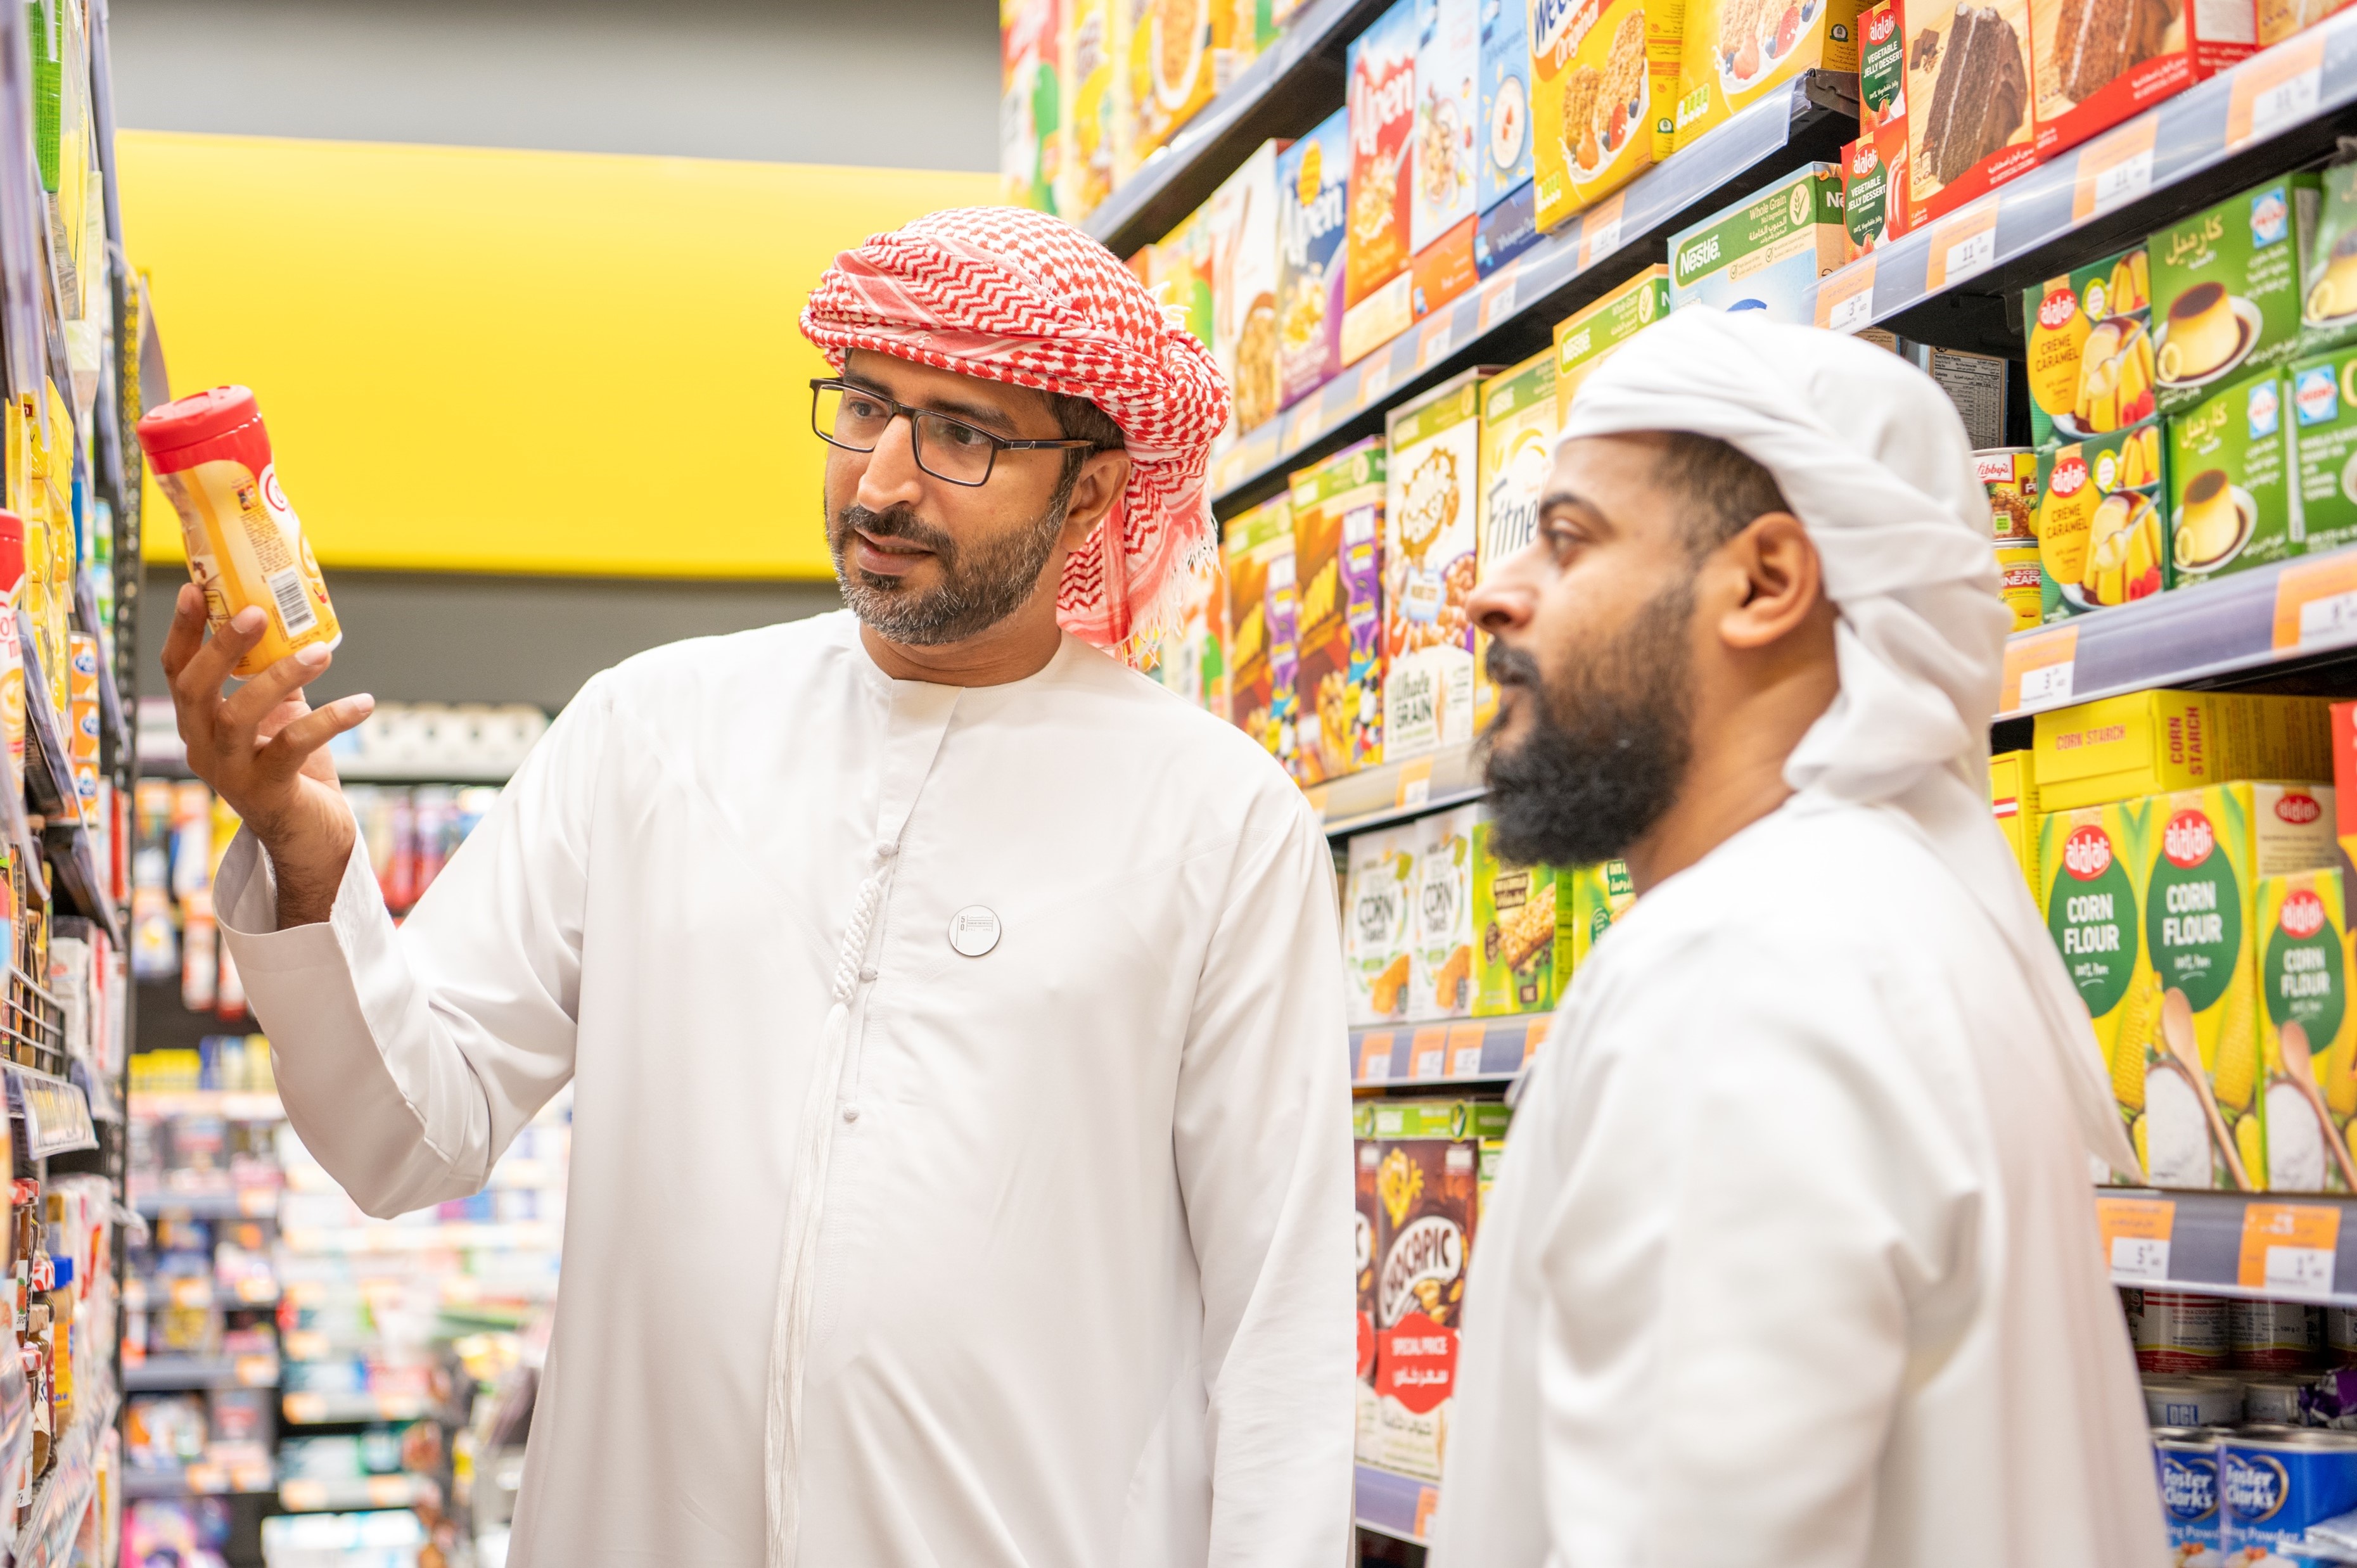  أسواق للتجزئه تحتفل باليوم الوطني الخمسين لدولة الإمارات العربية المتحدة من خلال تشغيل أسواق مارت بالكامل من قبل فريق إماراتي